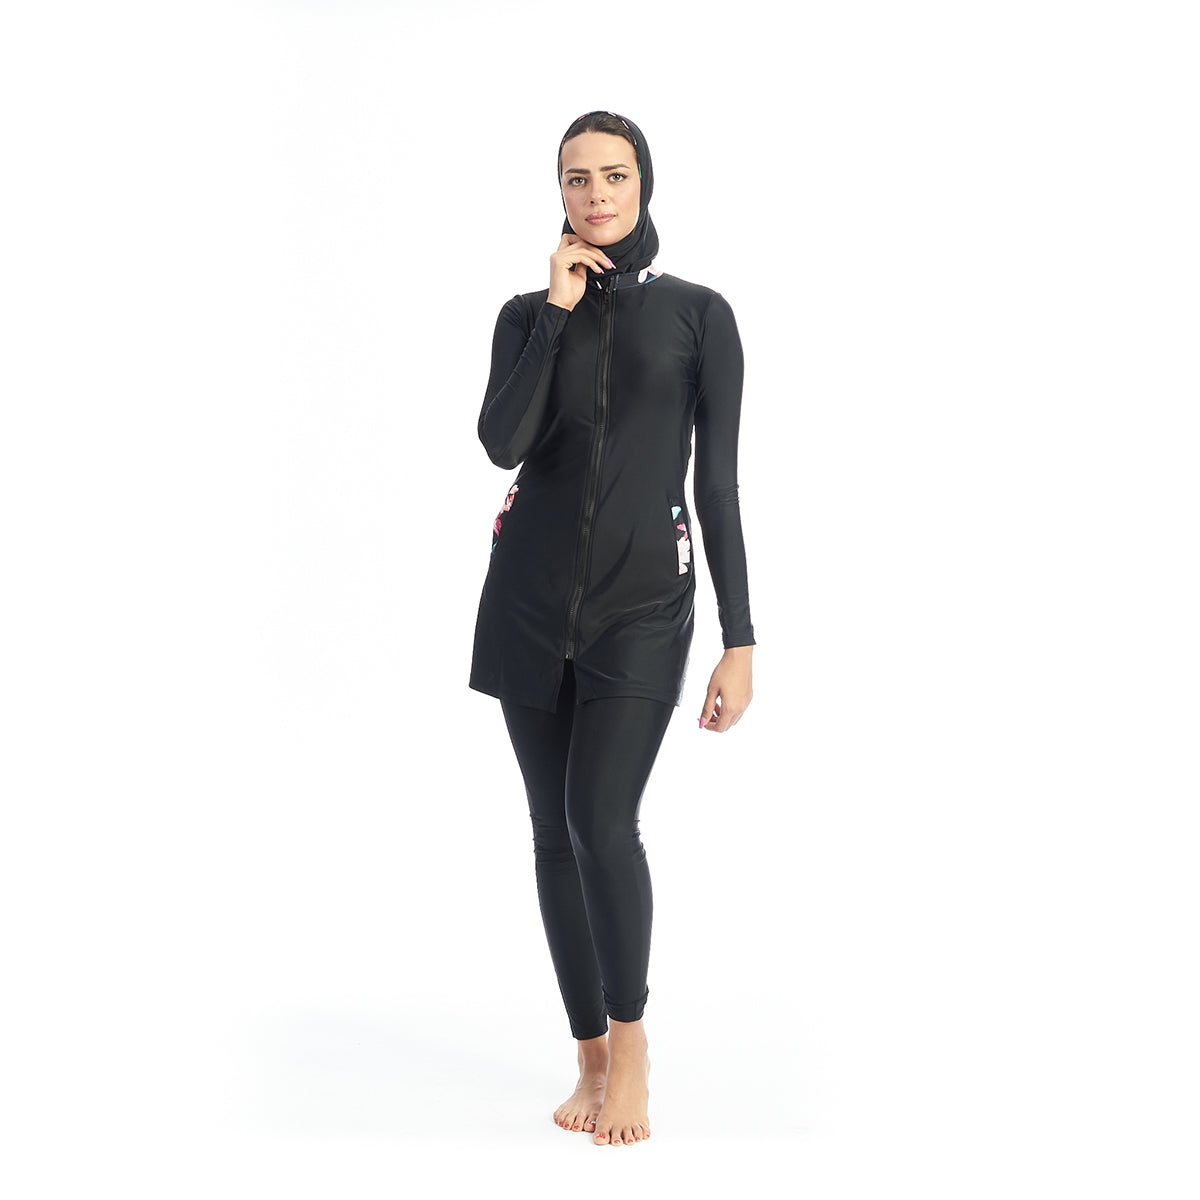 Energetics Burkini Full Covered Swimsuit For Women + Bonnet, Black